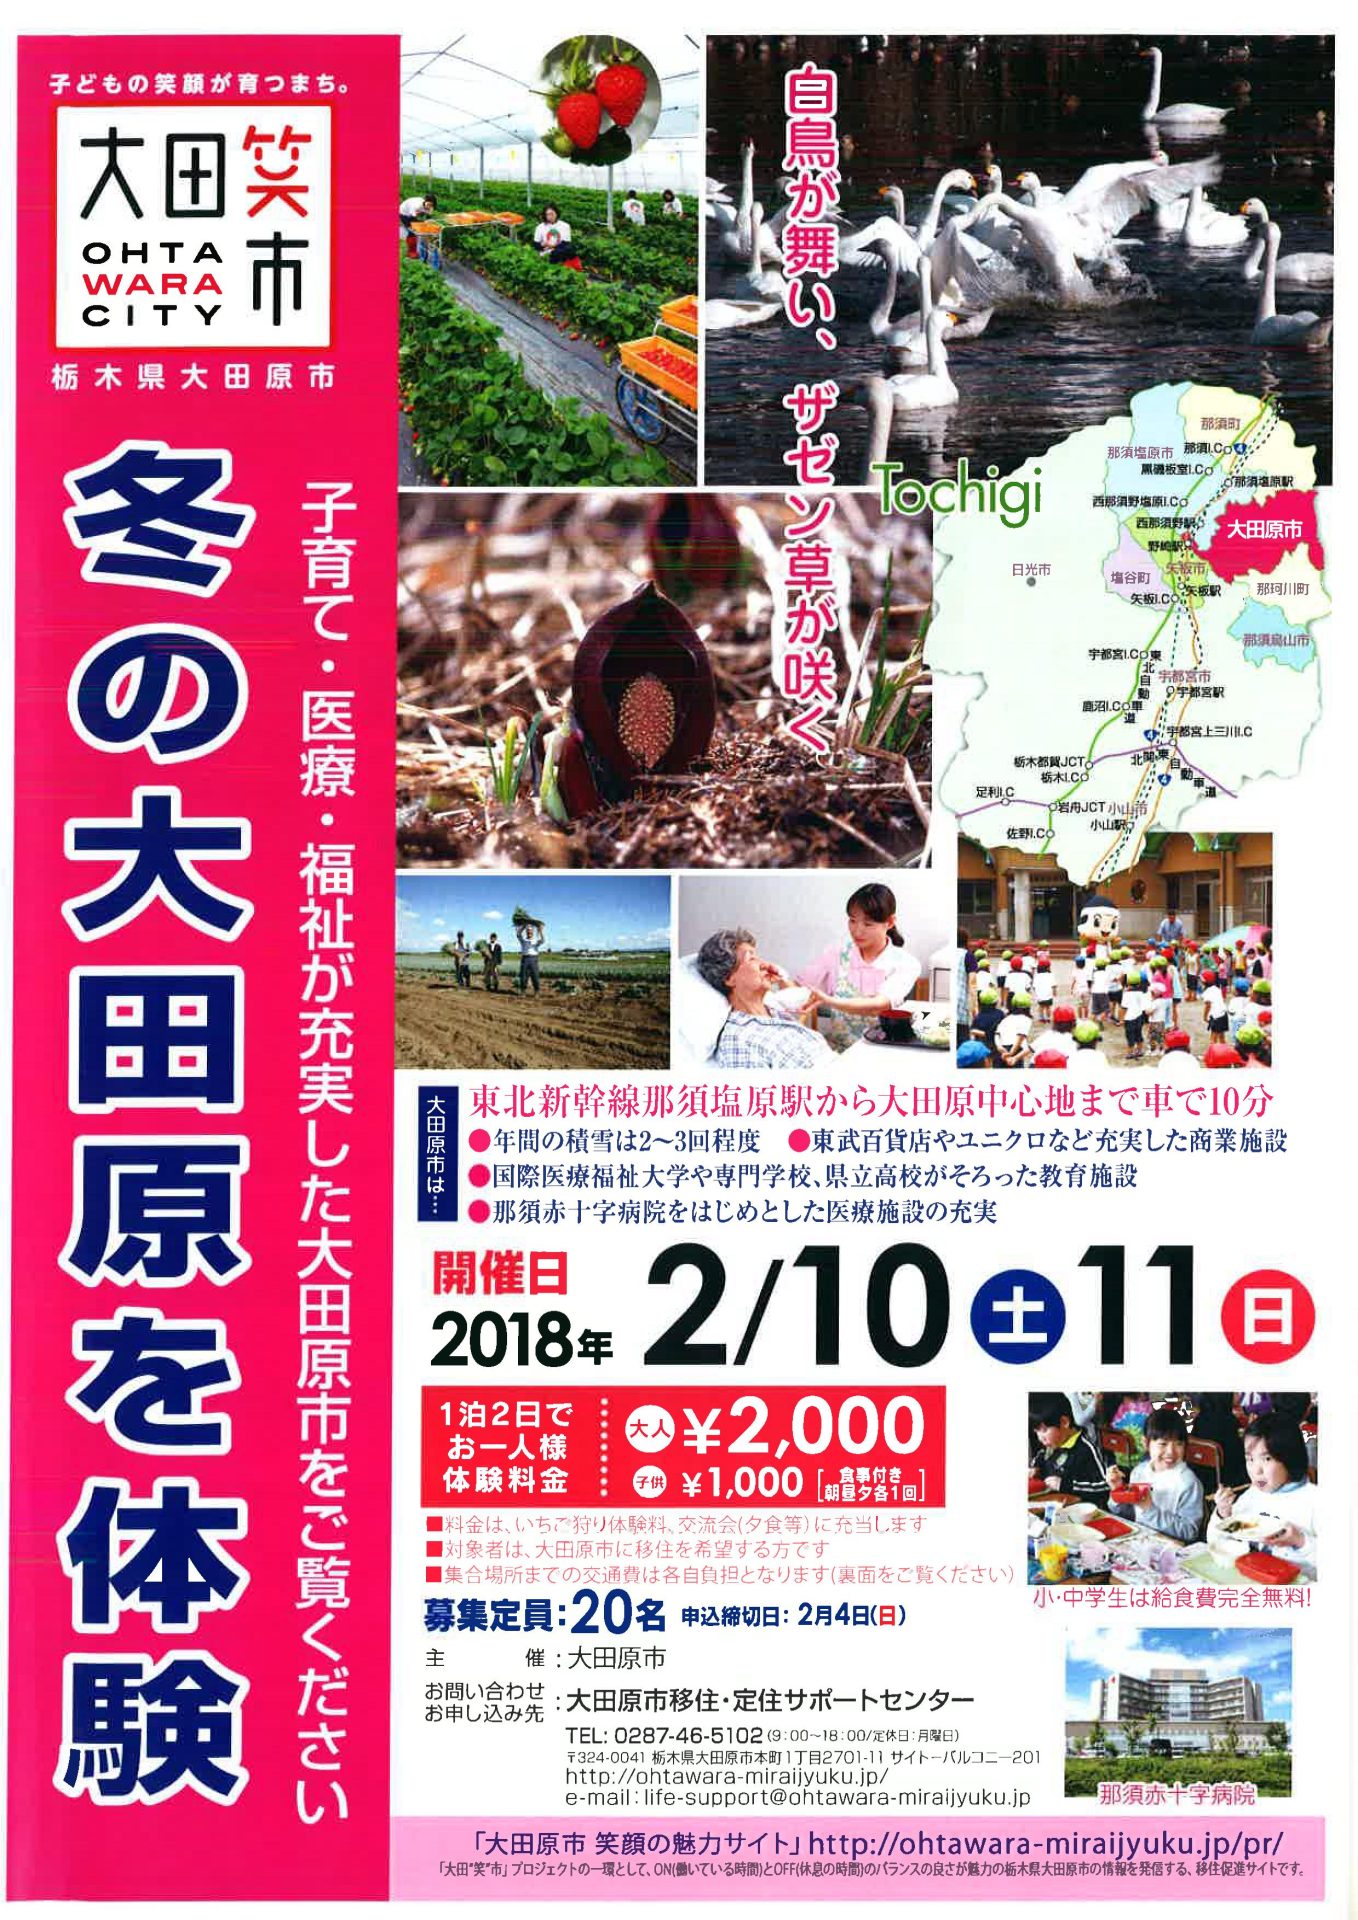 大田原市移住体験モニターツアー | 移住関連イベント情報